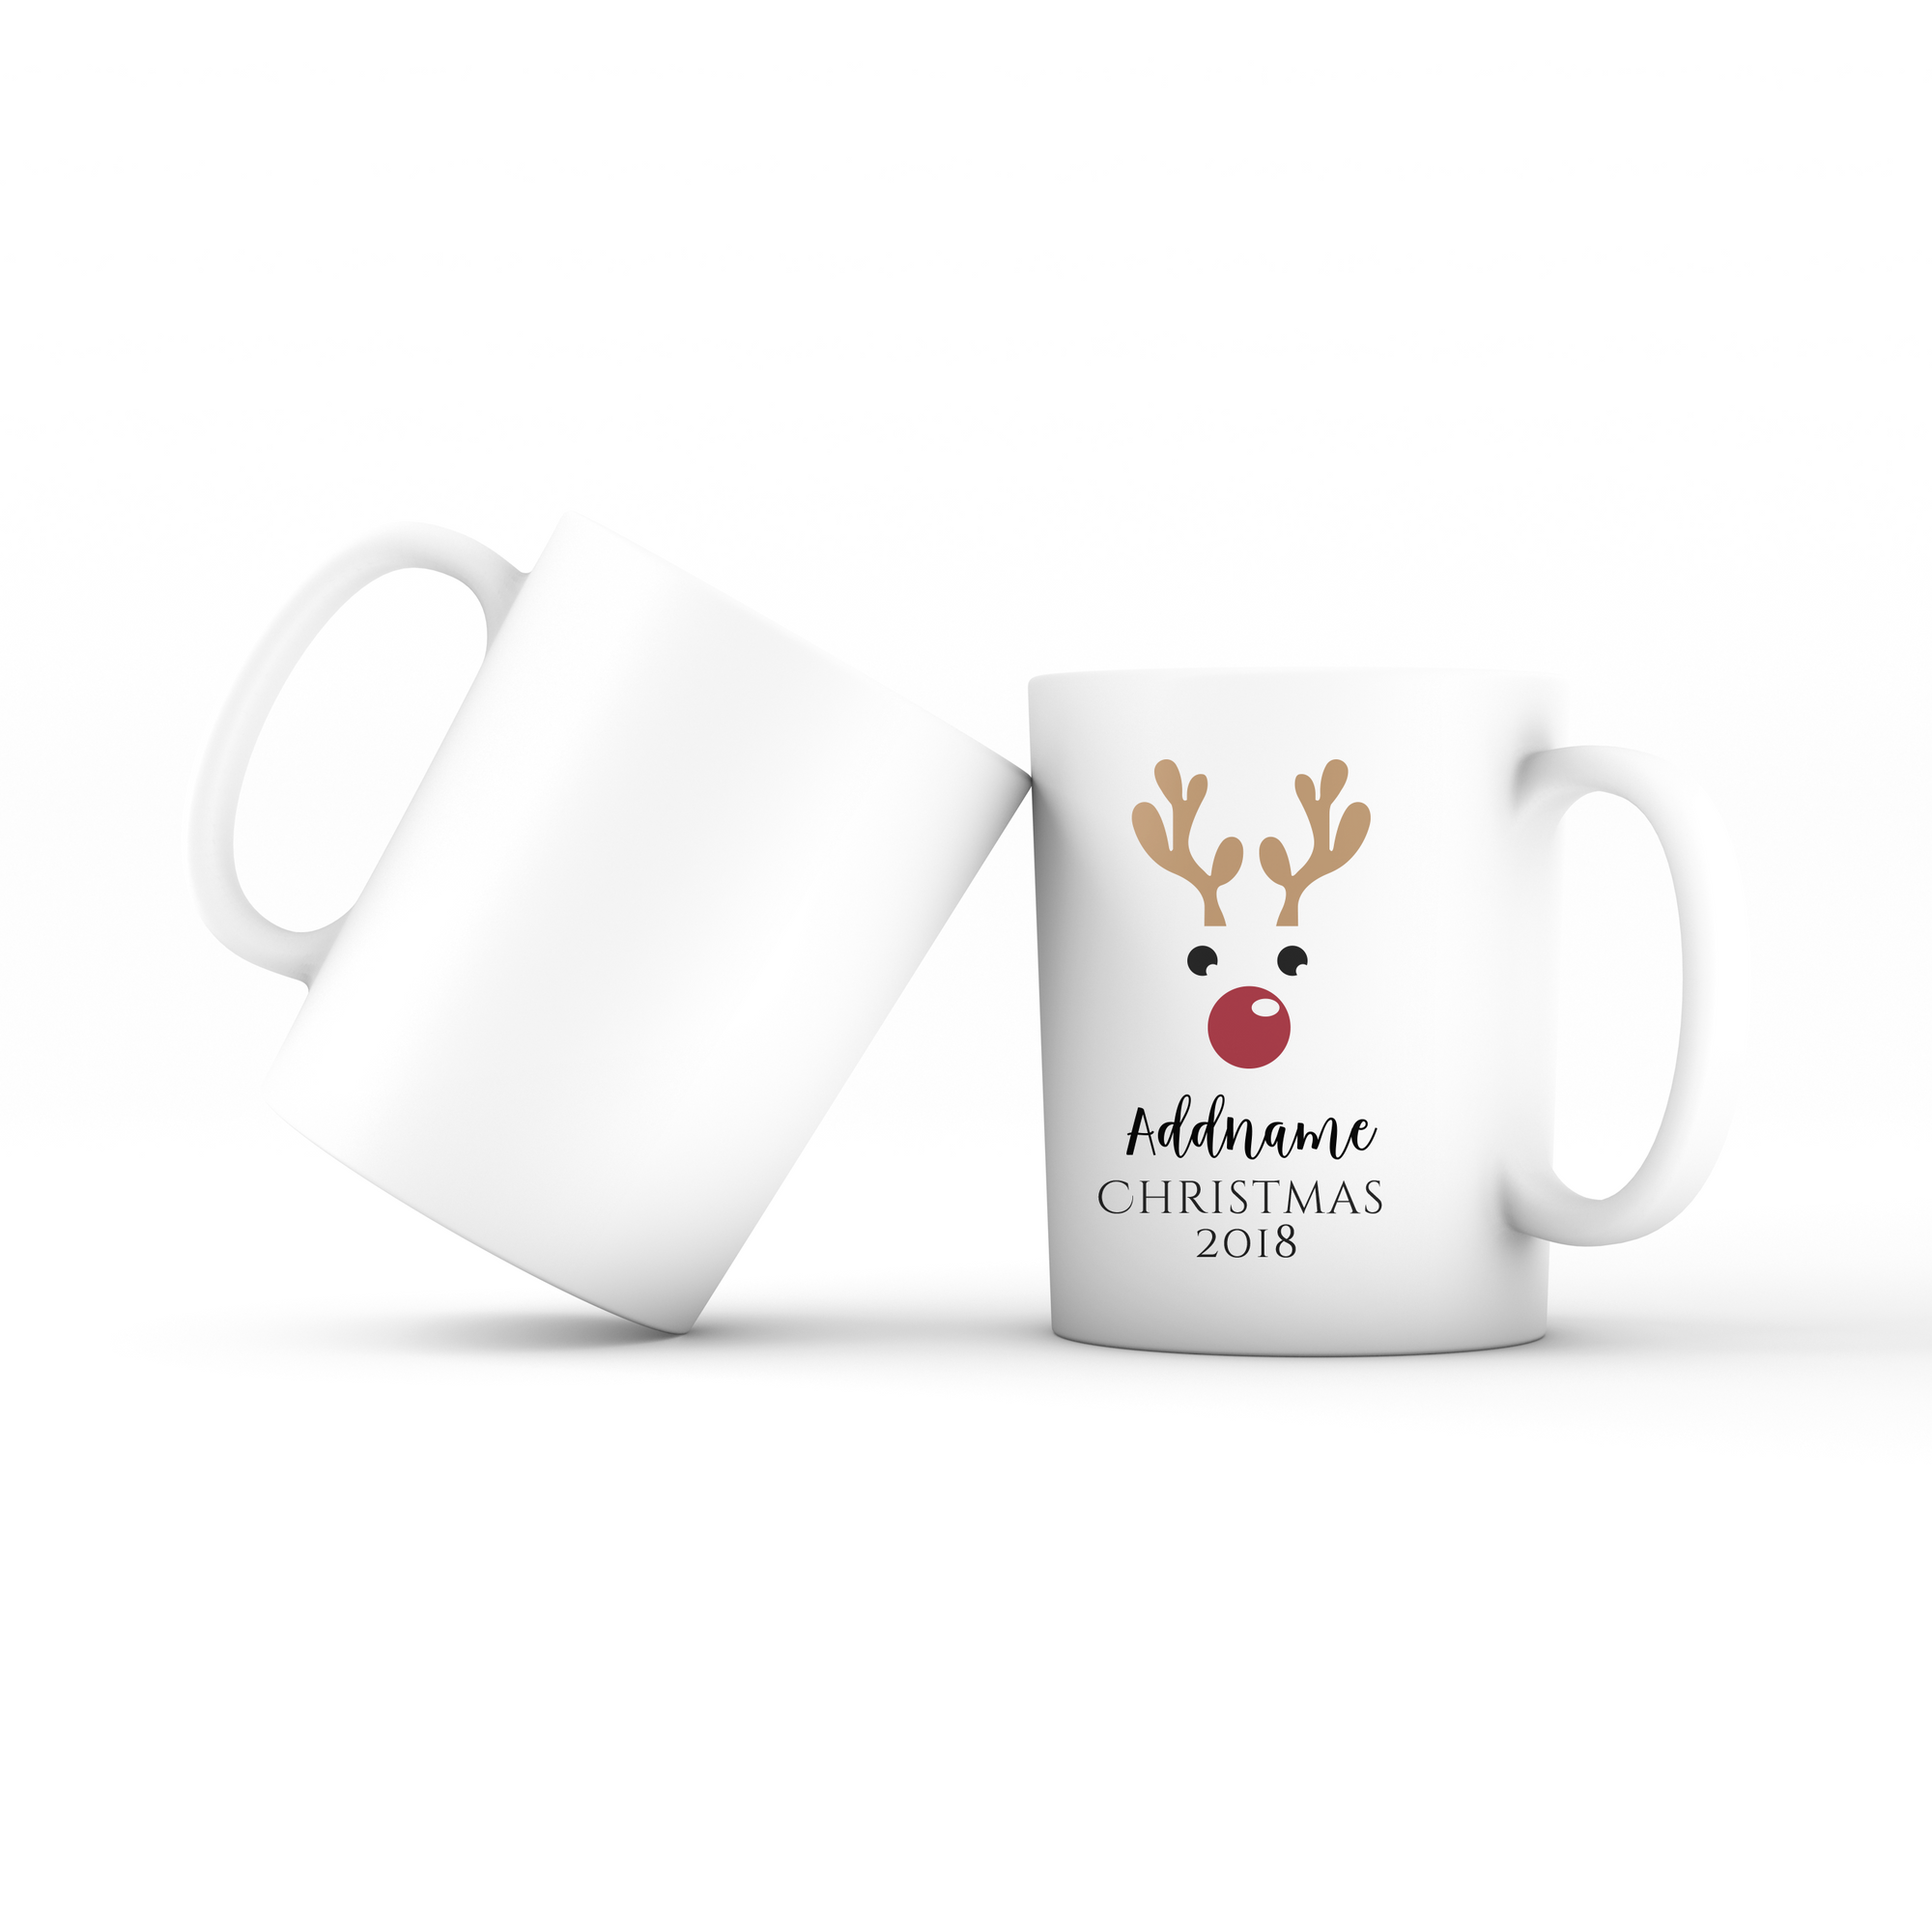 Christmas Cute Reindeer Christmas 2018 Addname Mug